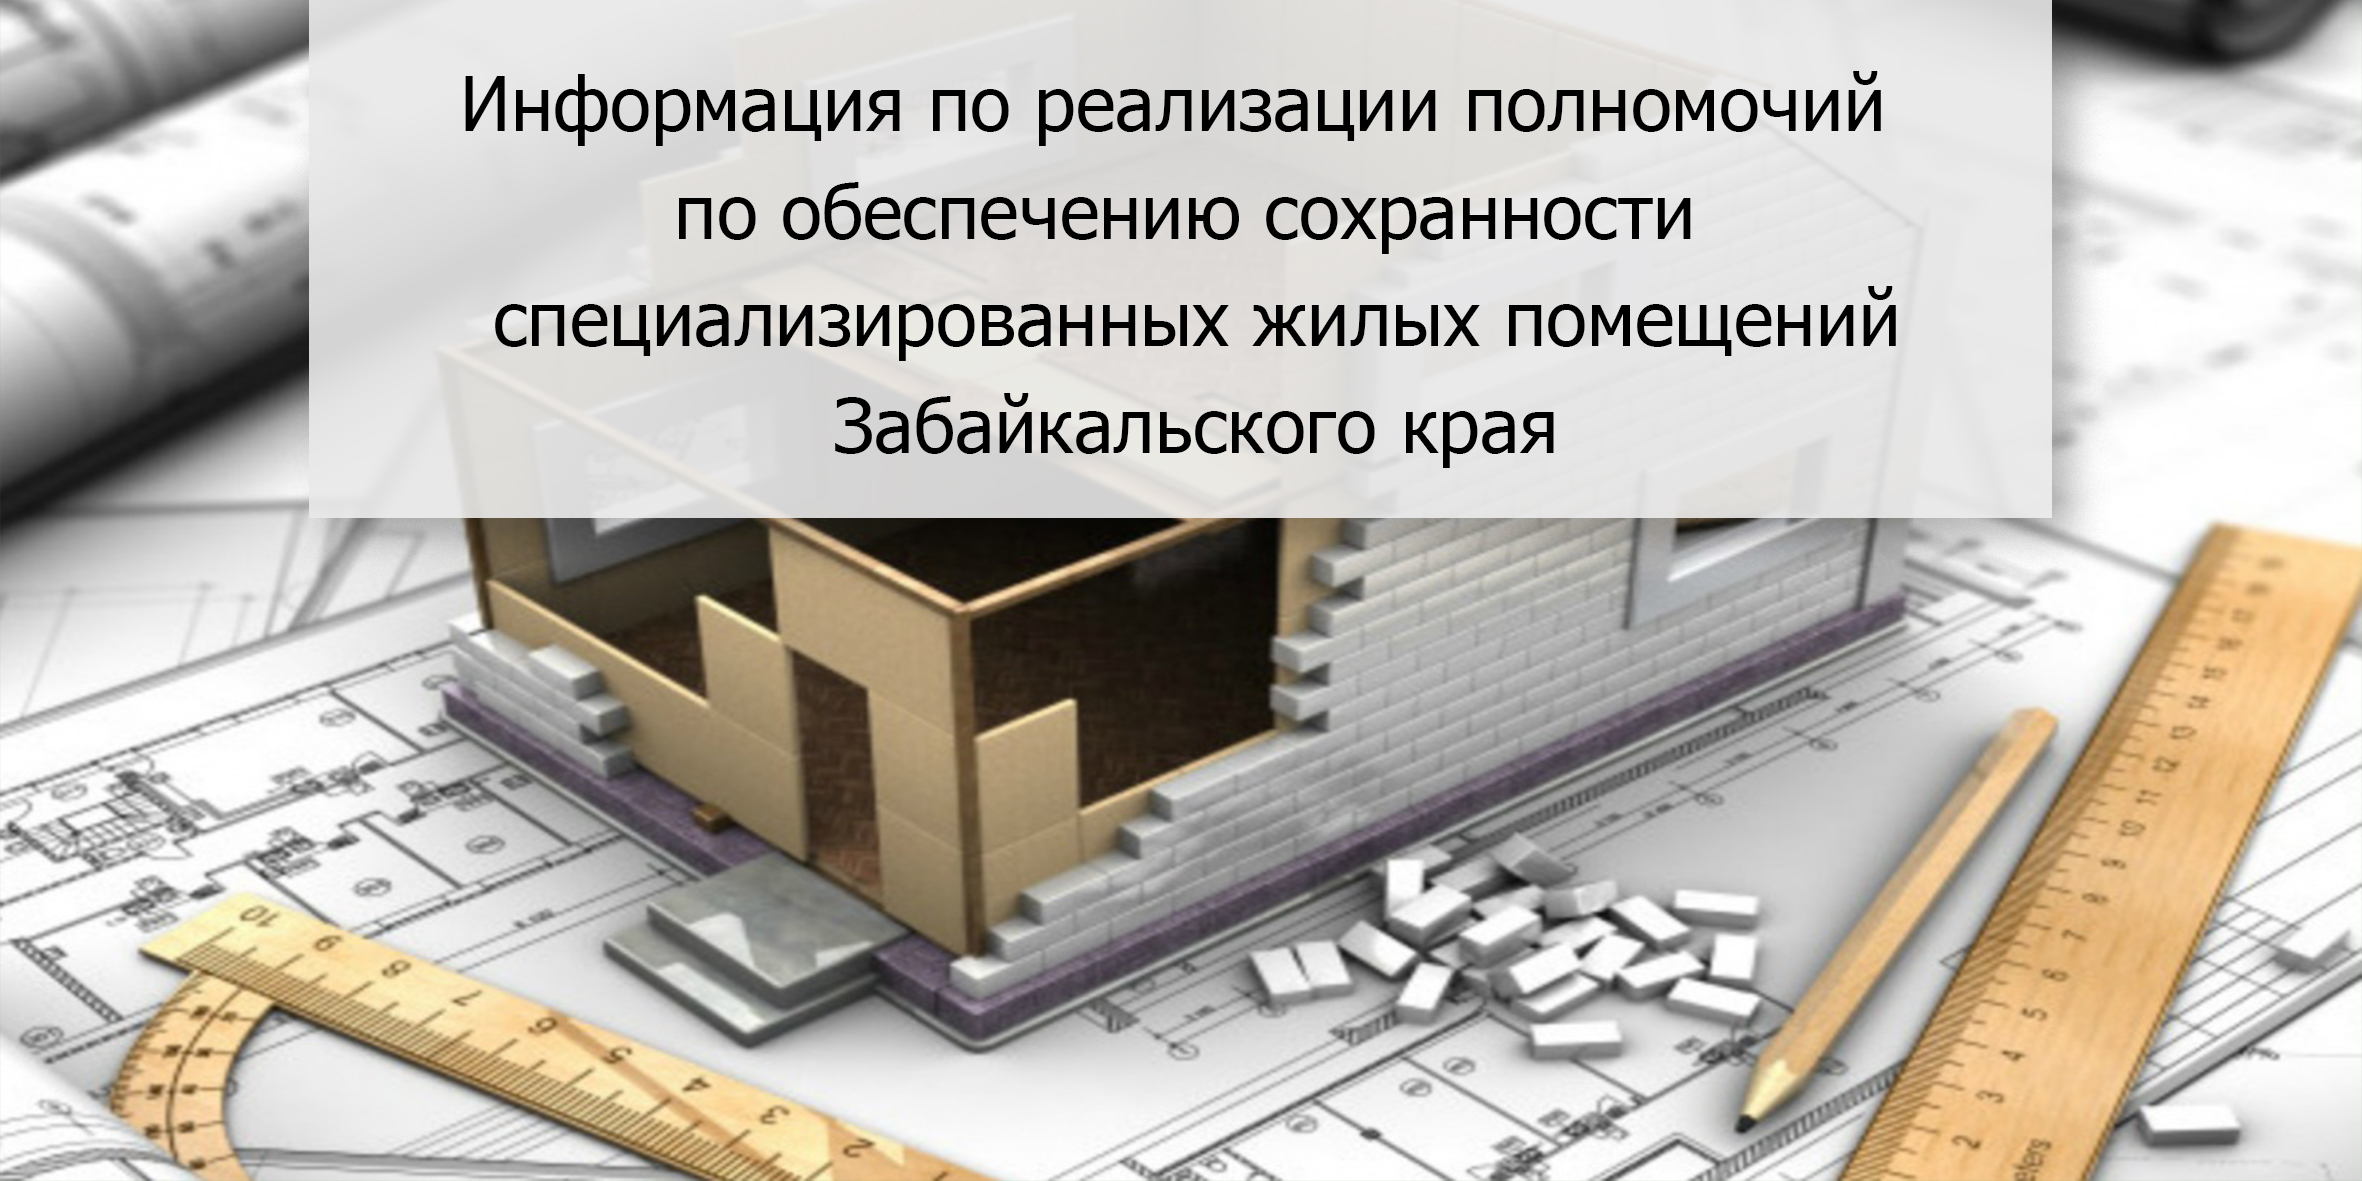 Информация по реализации полномочий по обеспечению сохранности специализированных жилых помещений Забайкальского края